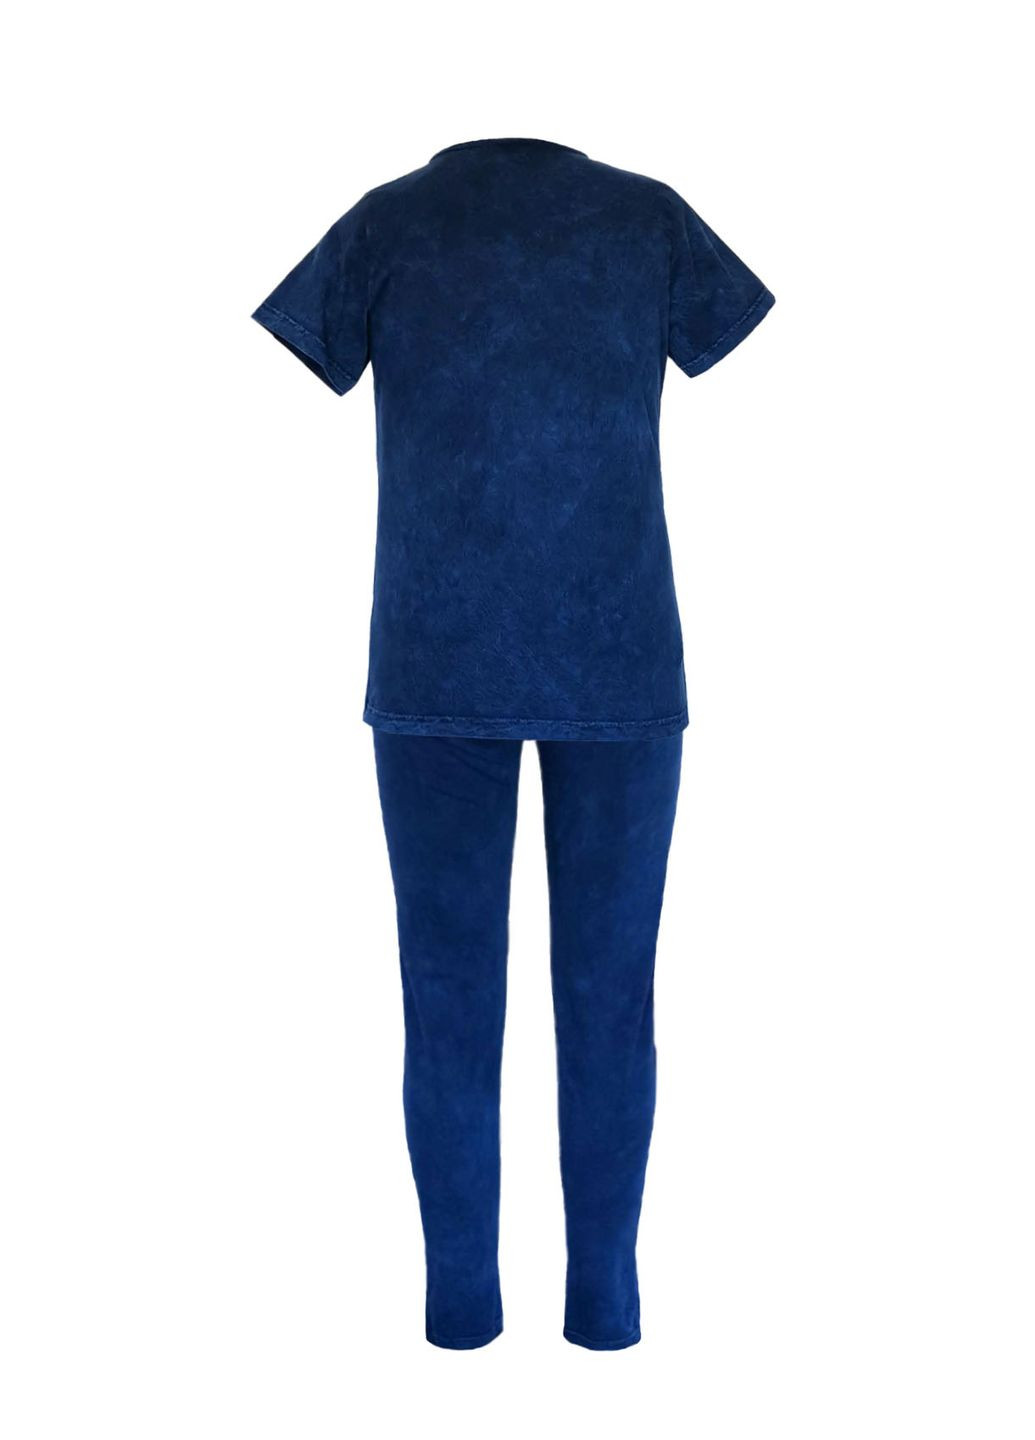 Синяя летняя футболка женская хлопковая варенка турция синий с коротким рукавом Swansea